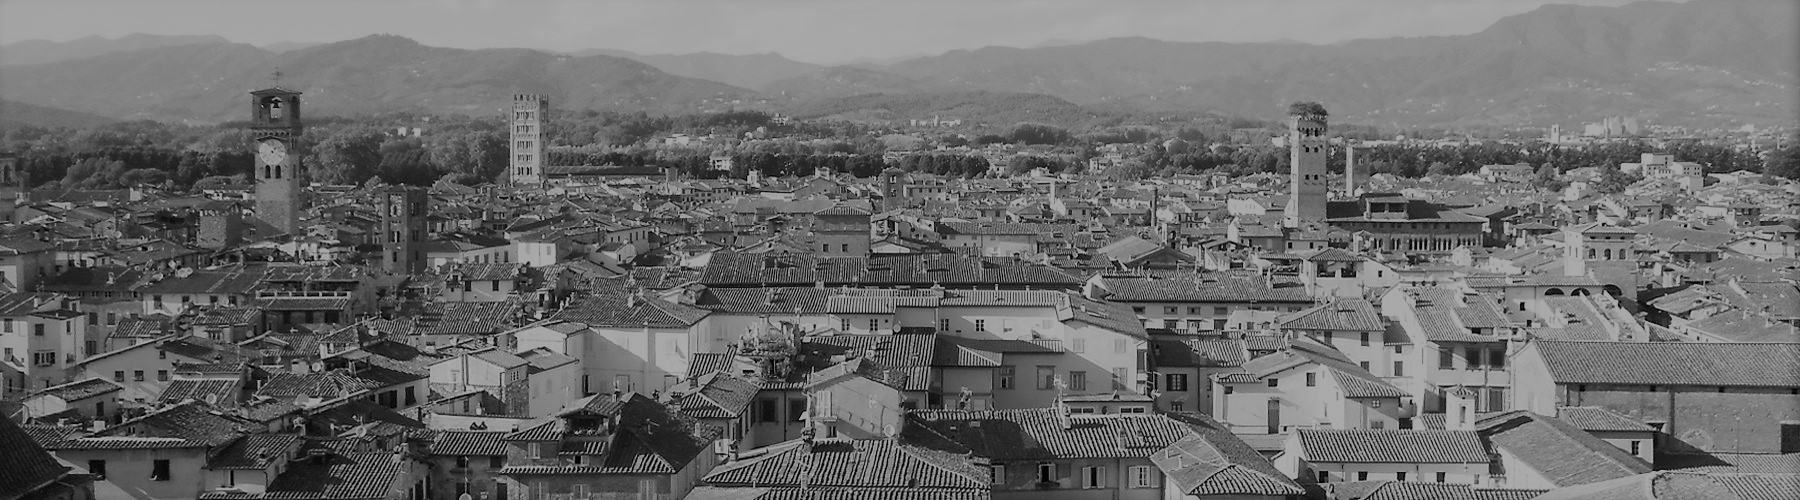 La storia di Lucca